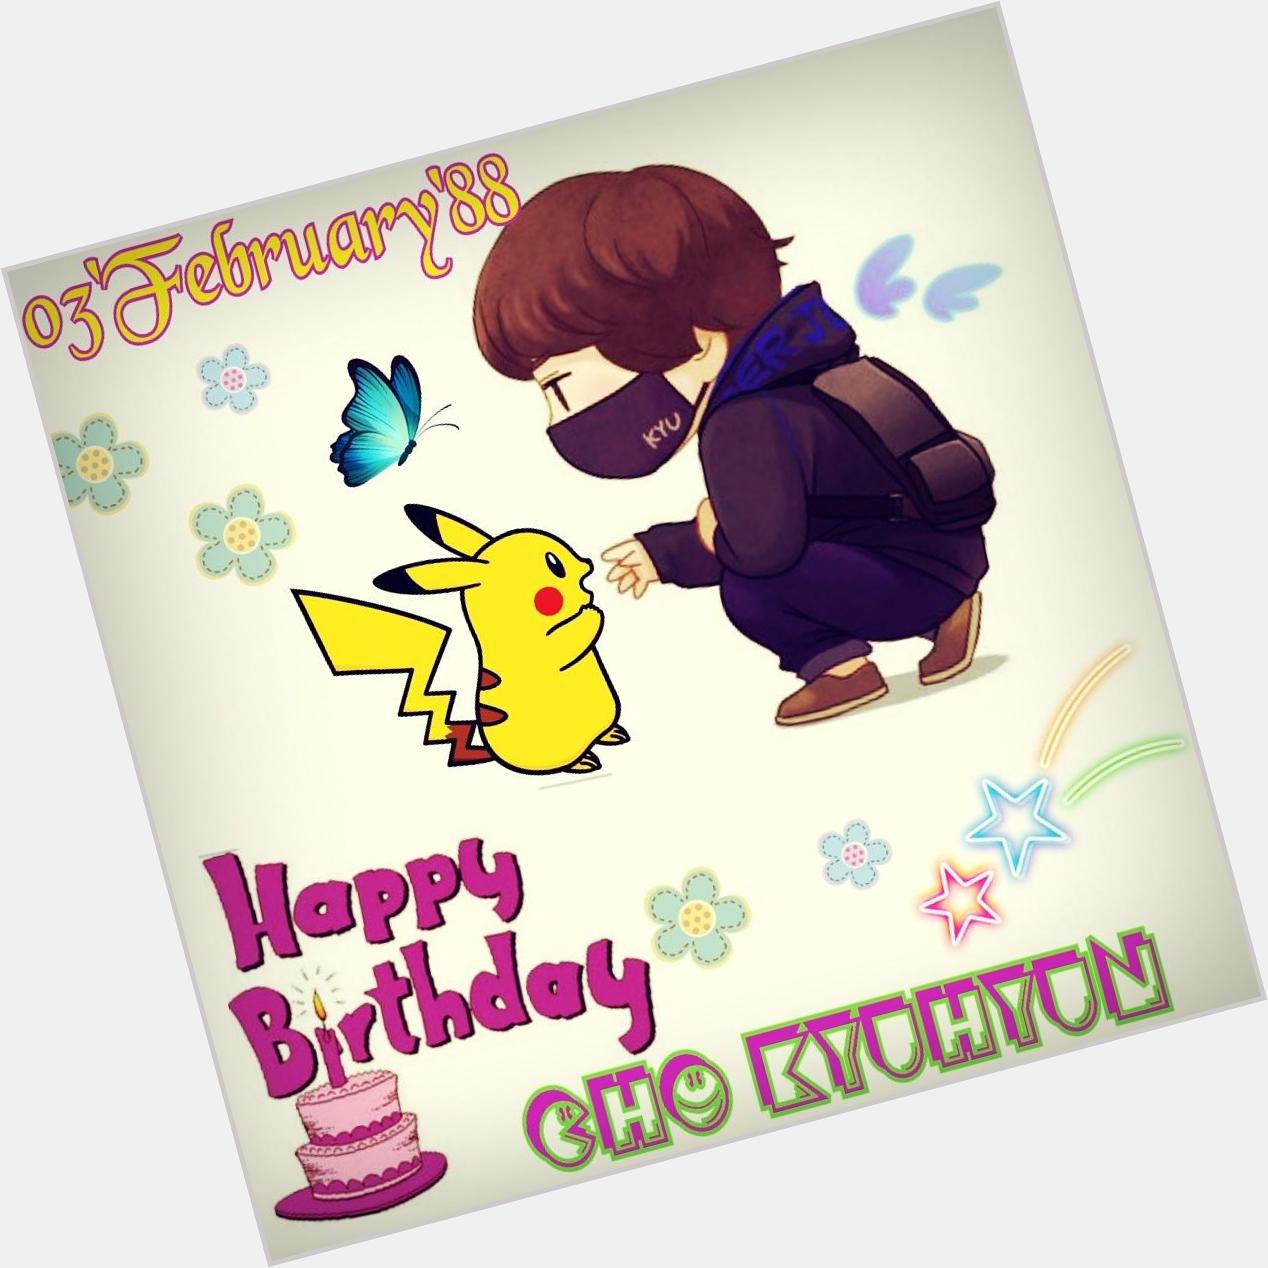 Happy birthday cho kyuhyun 